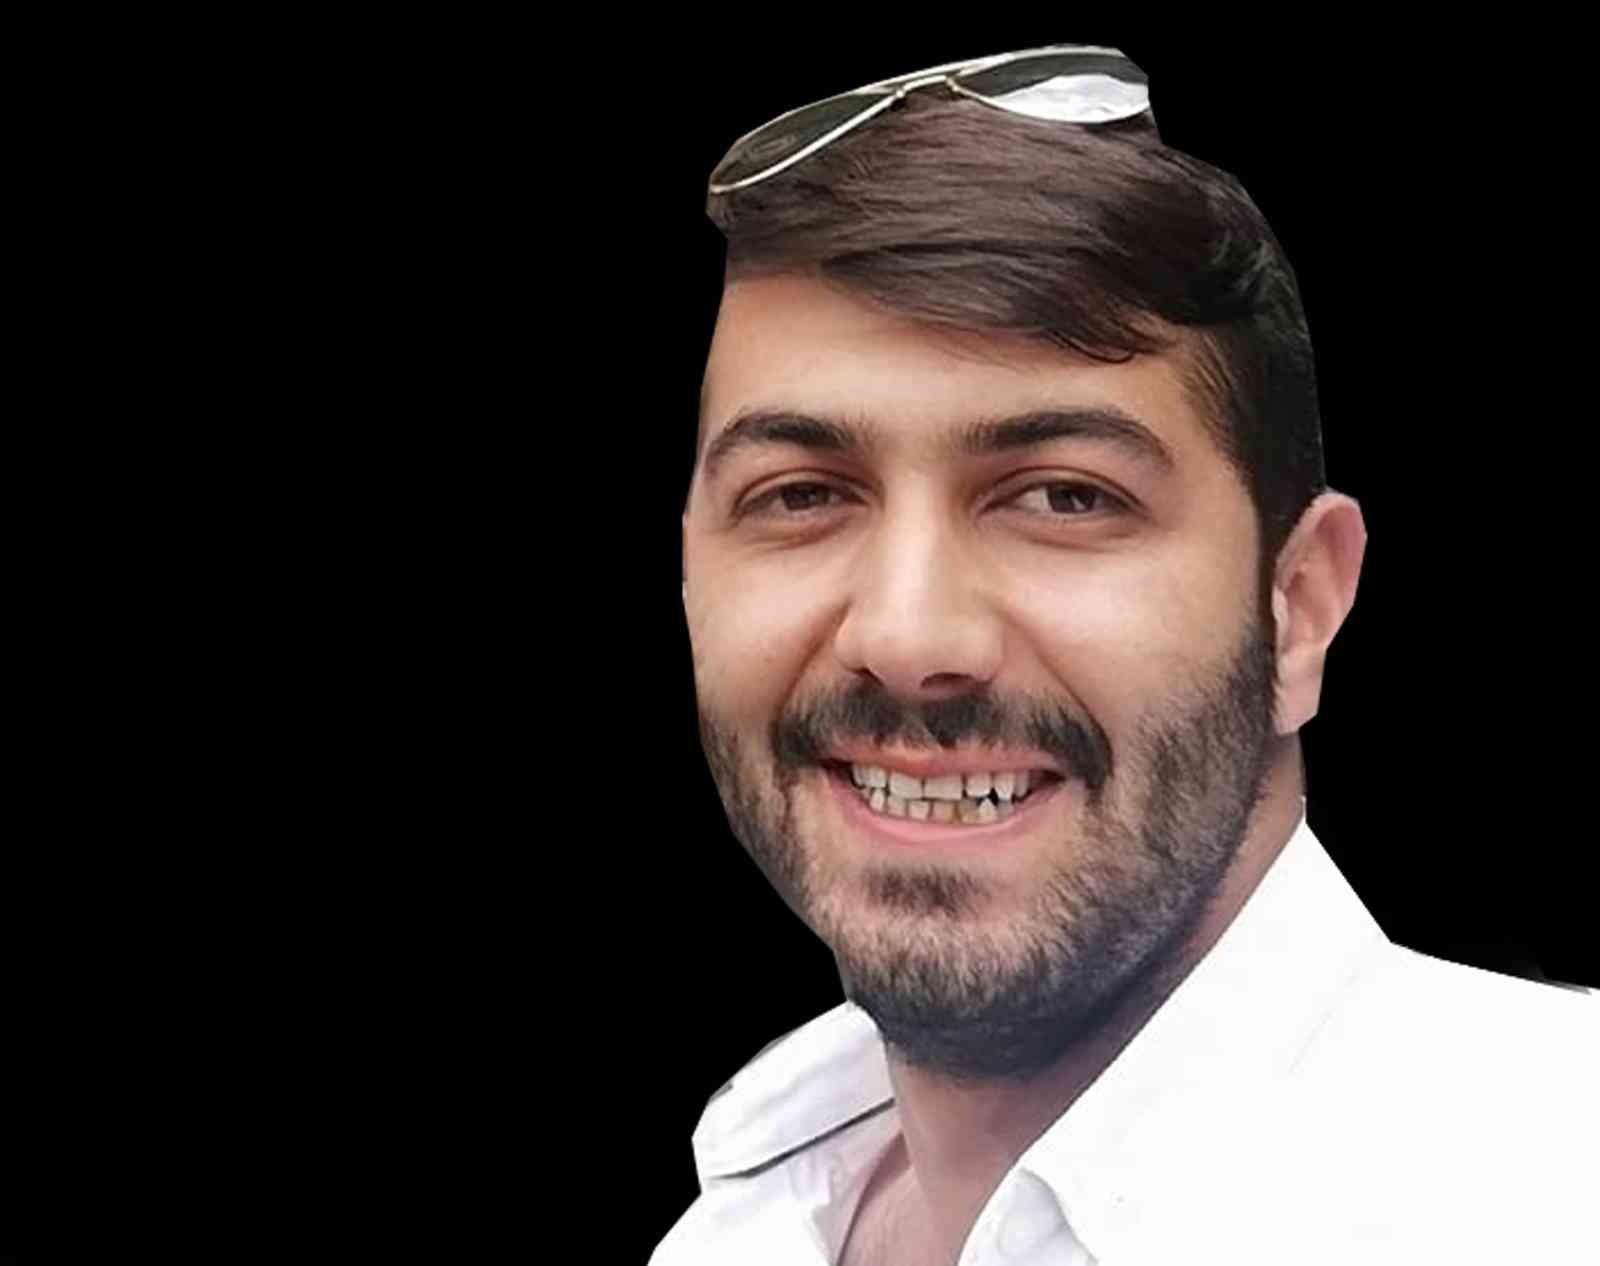 25 yaşındaki genç adam yolun kenarında ağır yaralı bulundu #erzincan